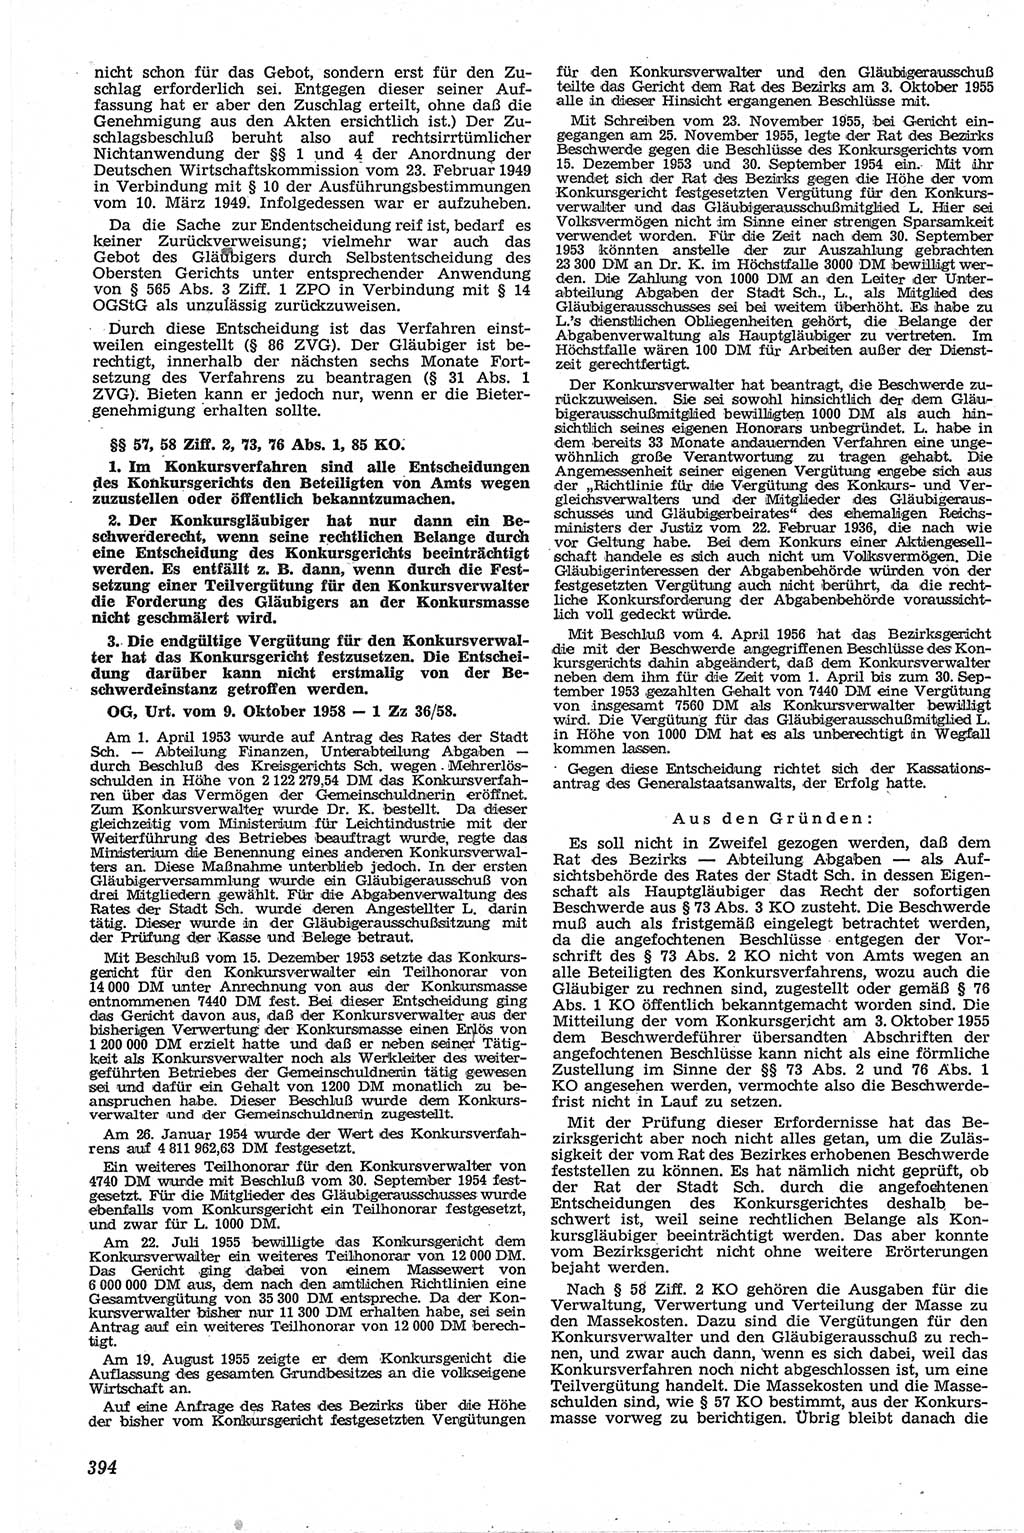 Neue Justiz (NJ), Zeitschrift für Recht und Rechtswissenschaft [Deutsche Demokratische Republik (DDR)], 13. Jahrgang 1959, Seite 394 (NJ DDR 1959, S. 394)